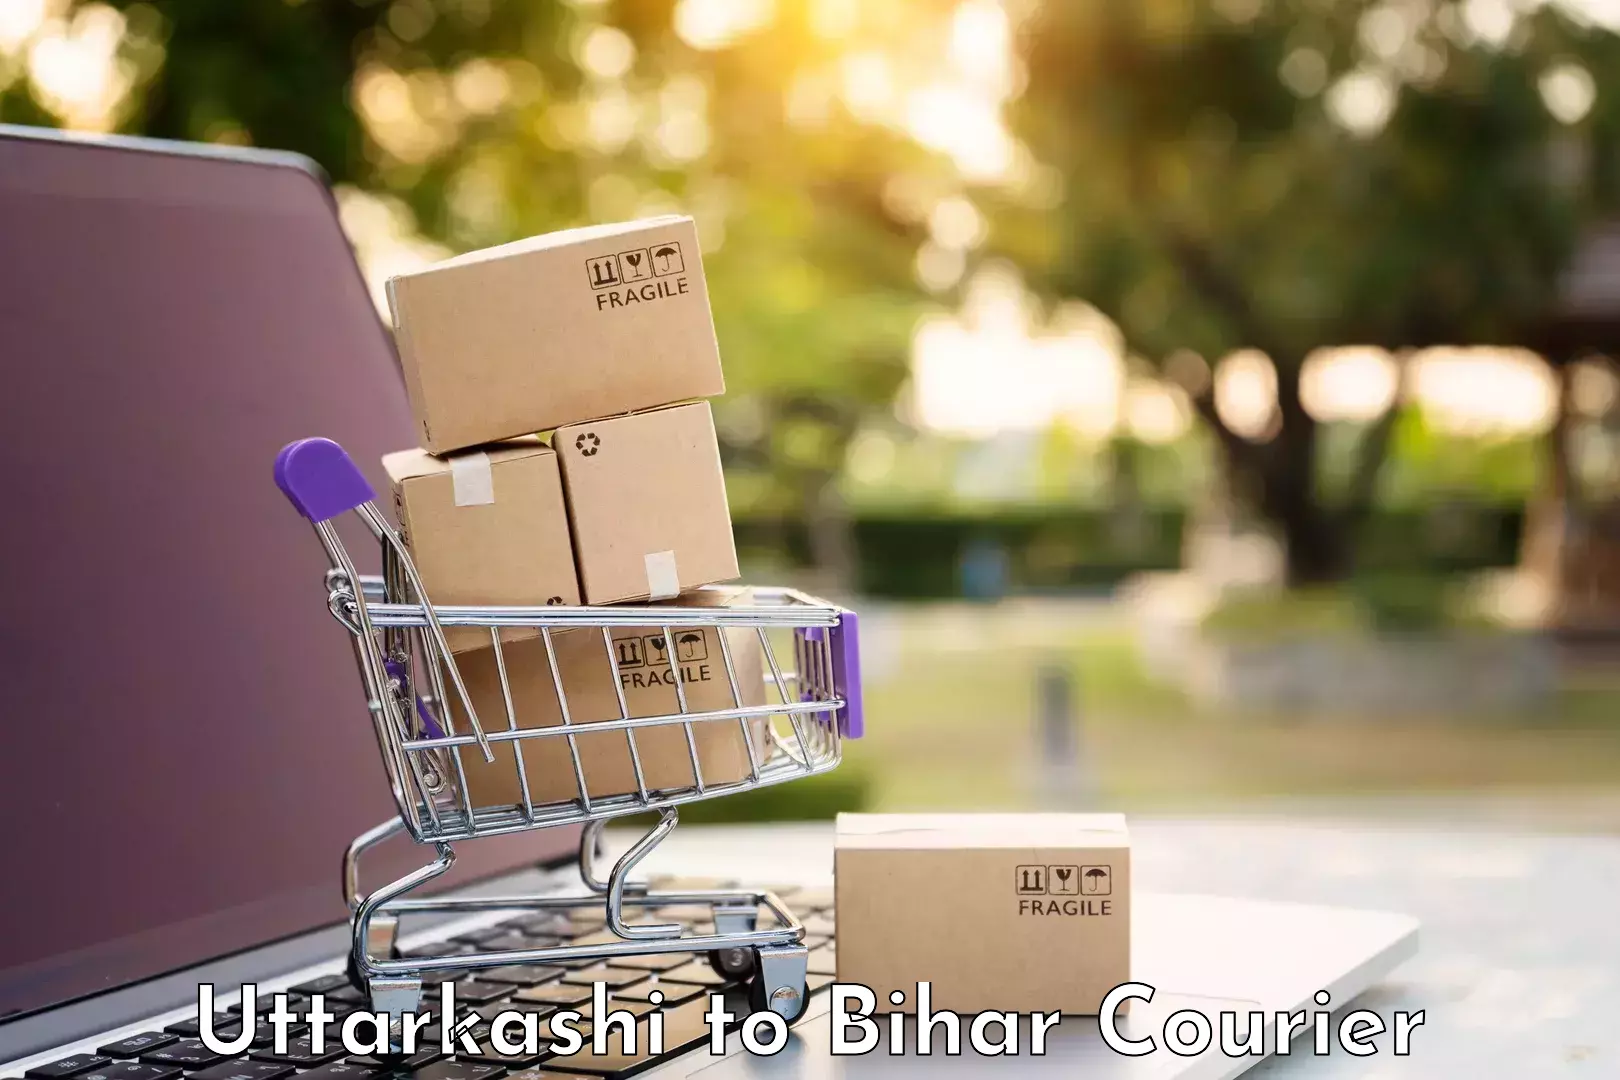 Luggage delivery app Uttarkashi to Baniapur